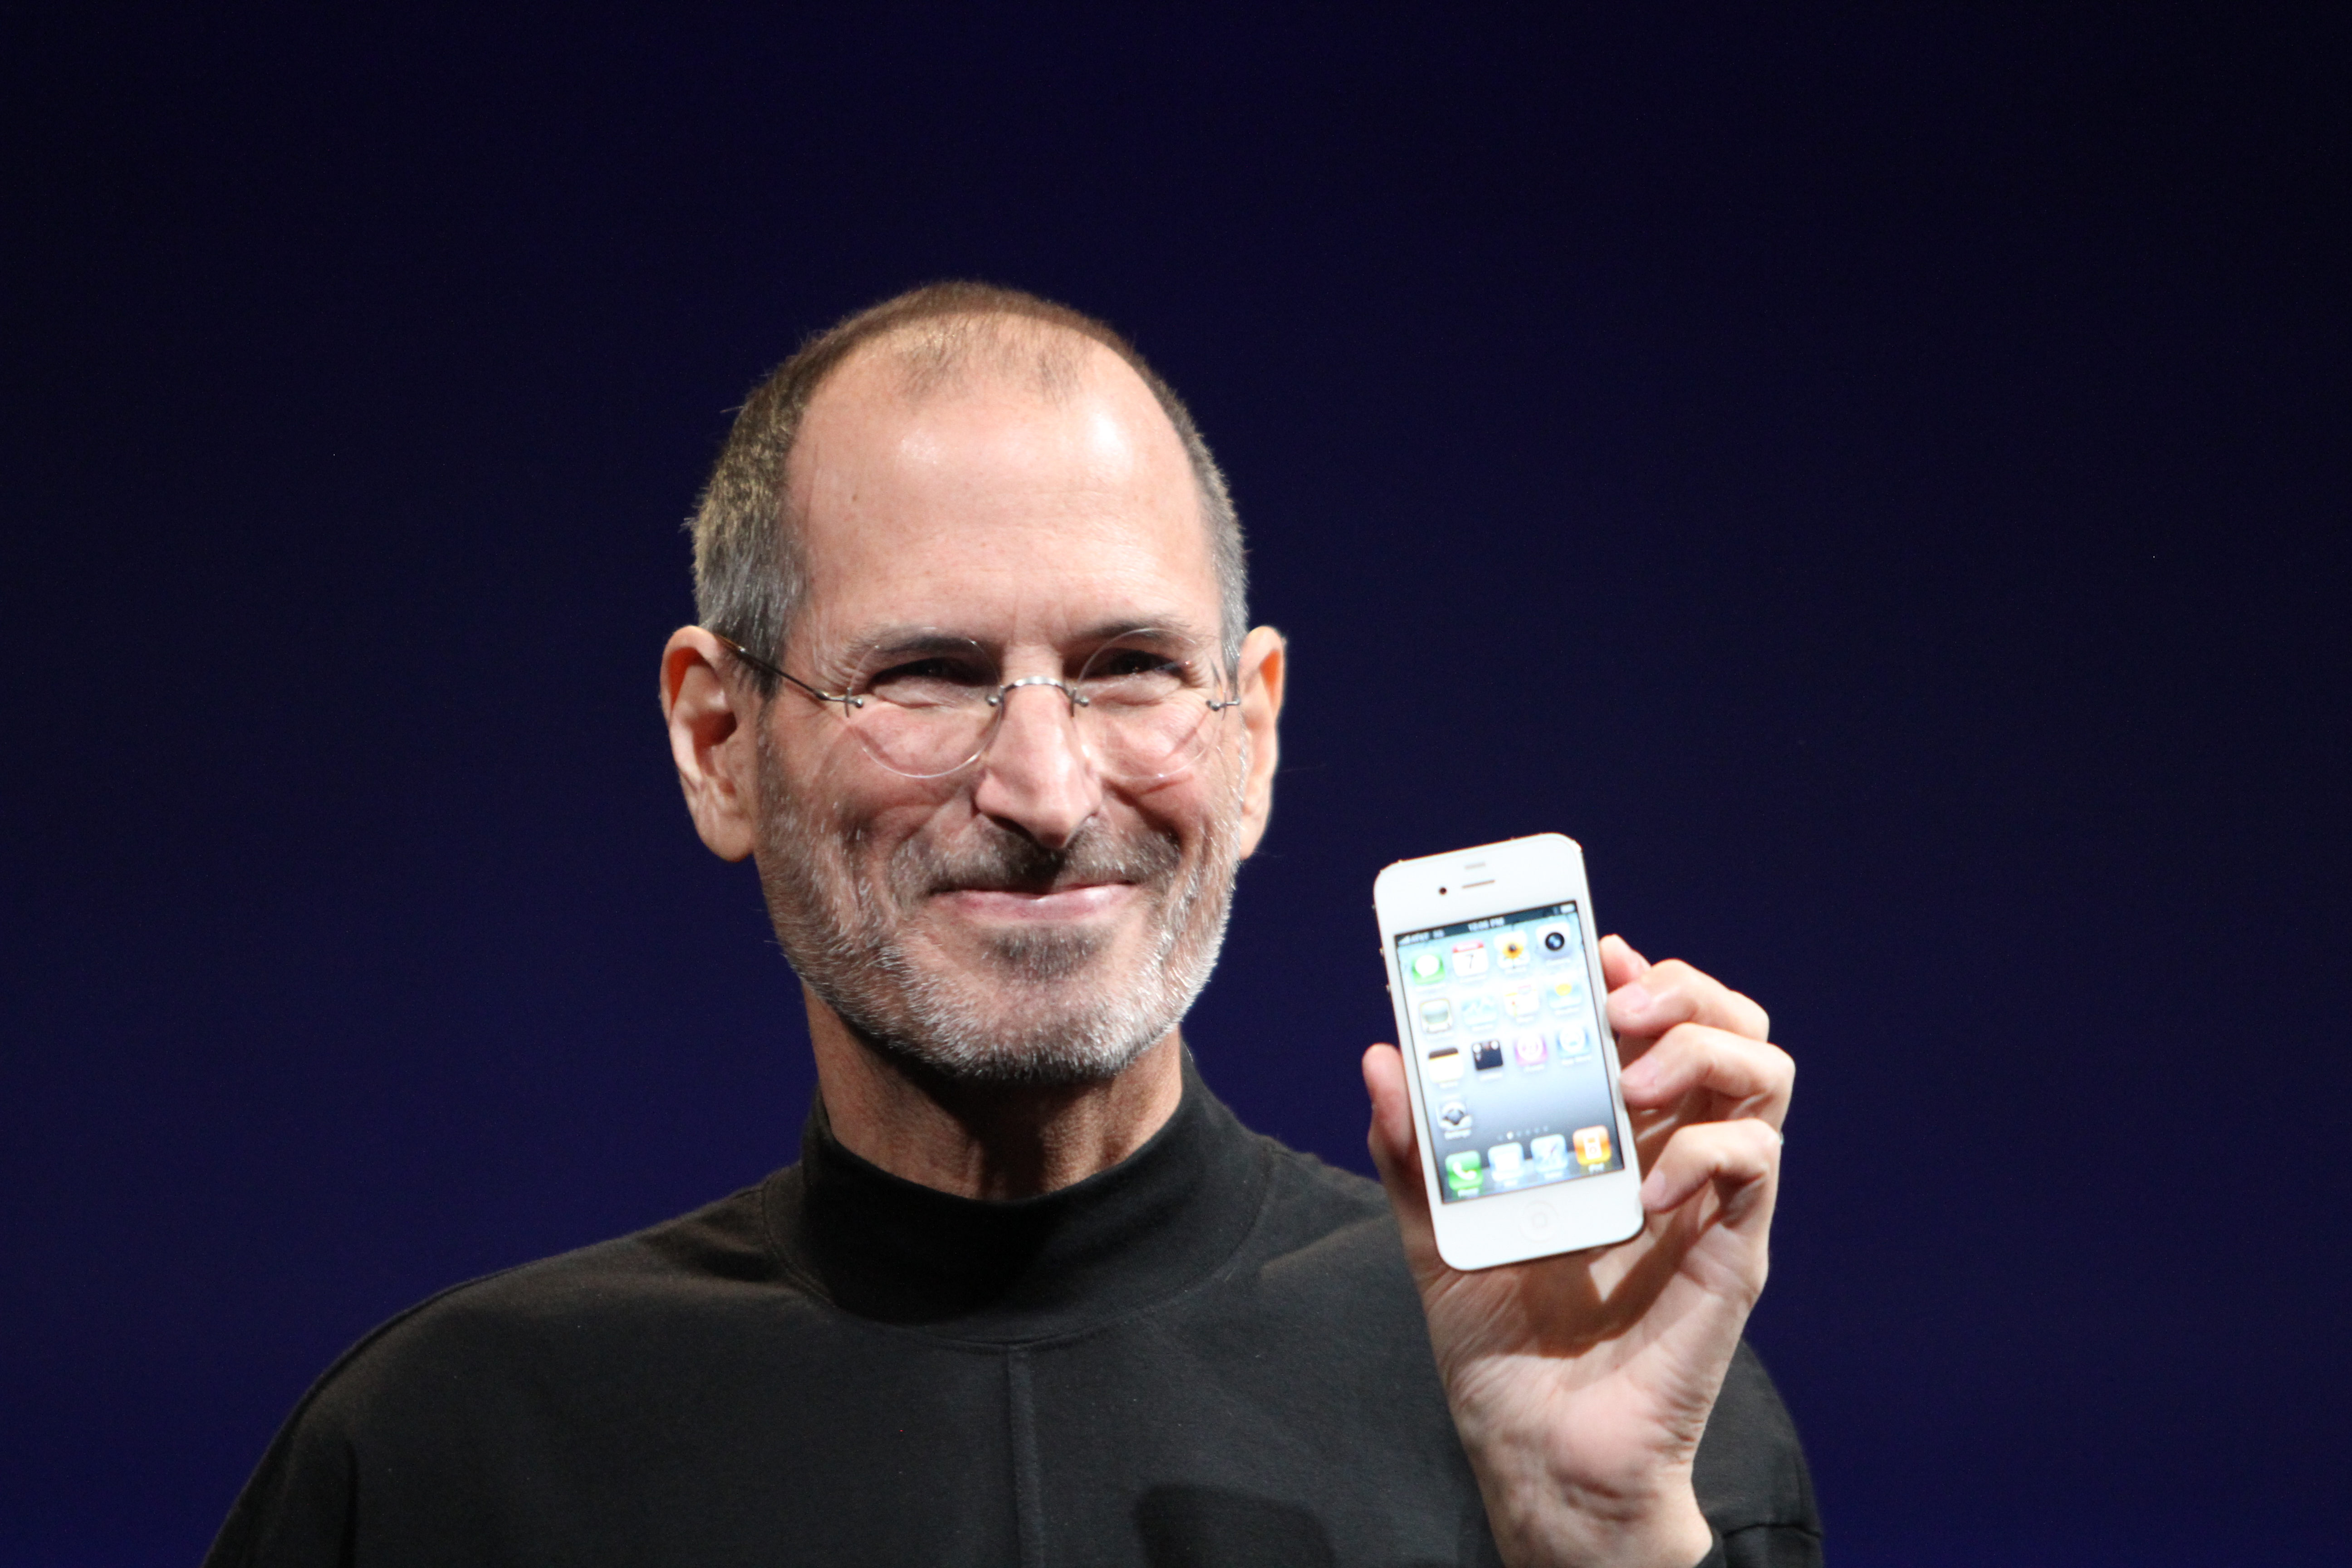 Steve Jobs cometió muchos errores, y si quieres tener éxito, deberías equivocarte también